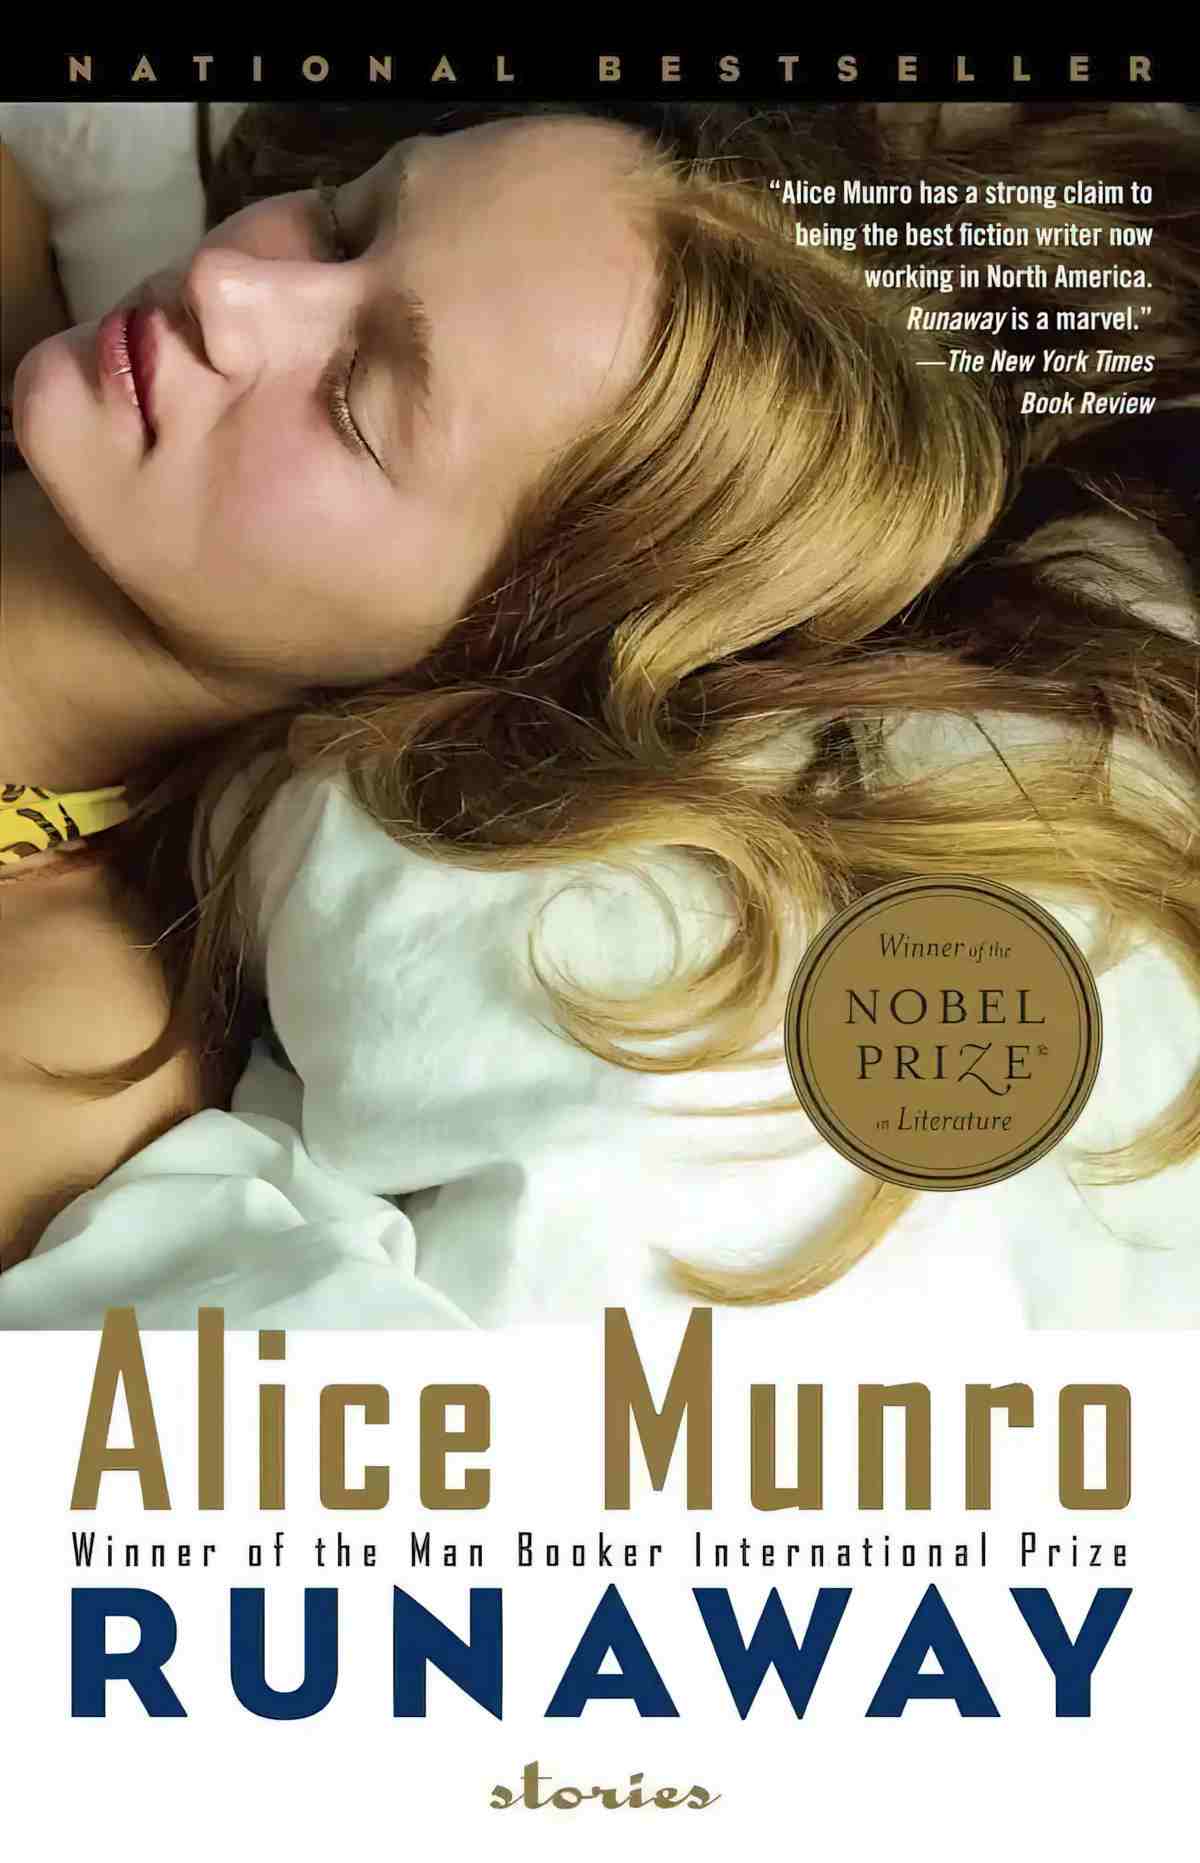 Runaway by Alice Munro Short Story Short Story Analysis